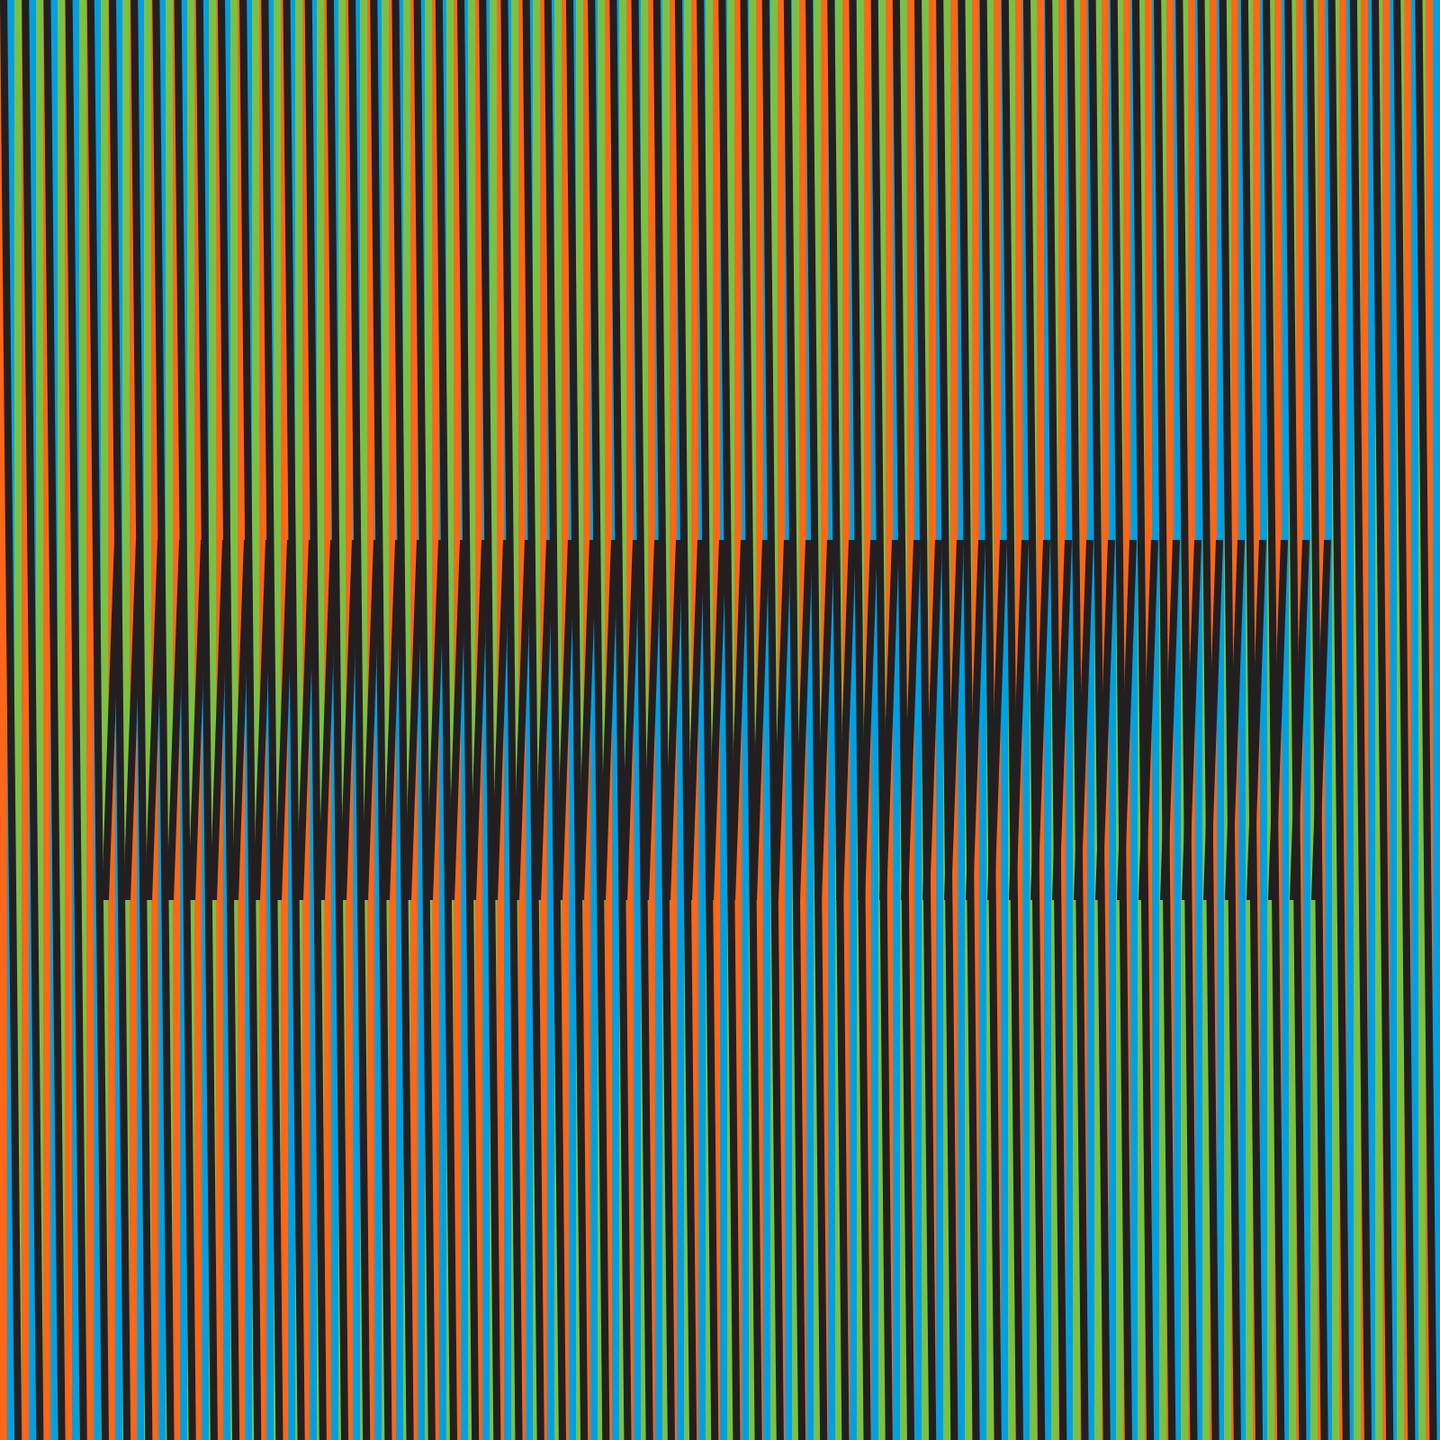 'Induction chromatique a double fréquence RVB 7' (París, 2014), 100 x 100 cm.